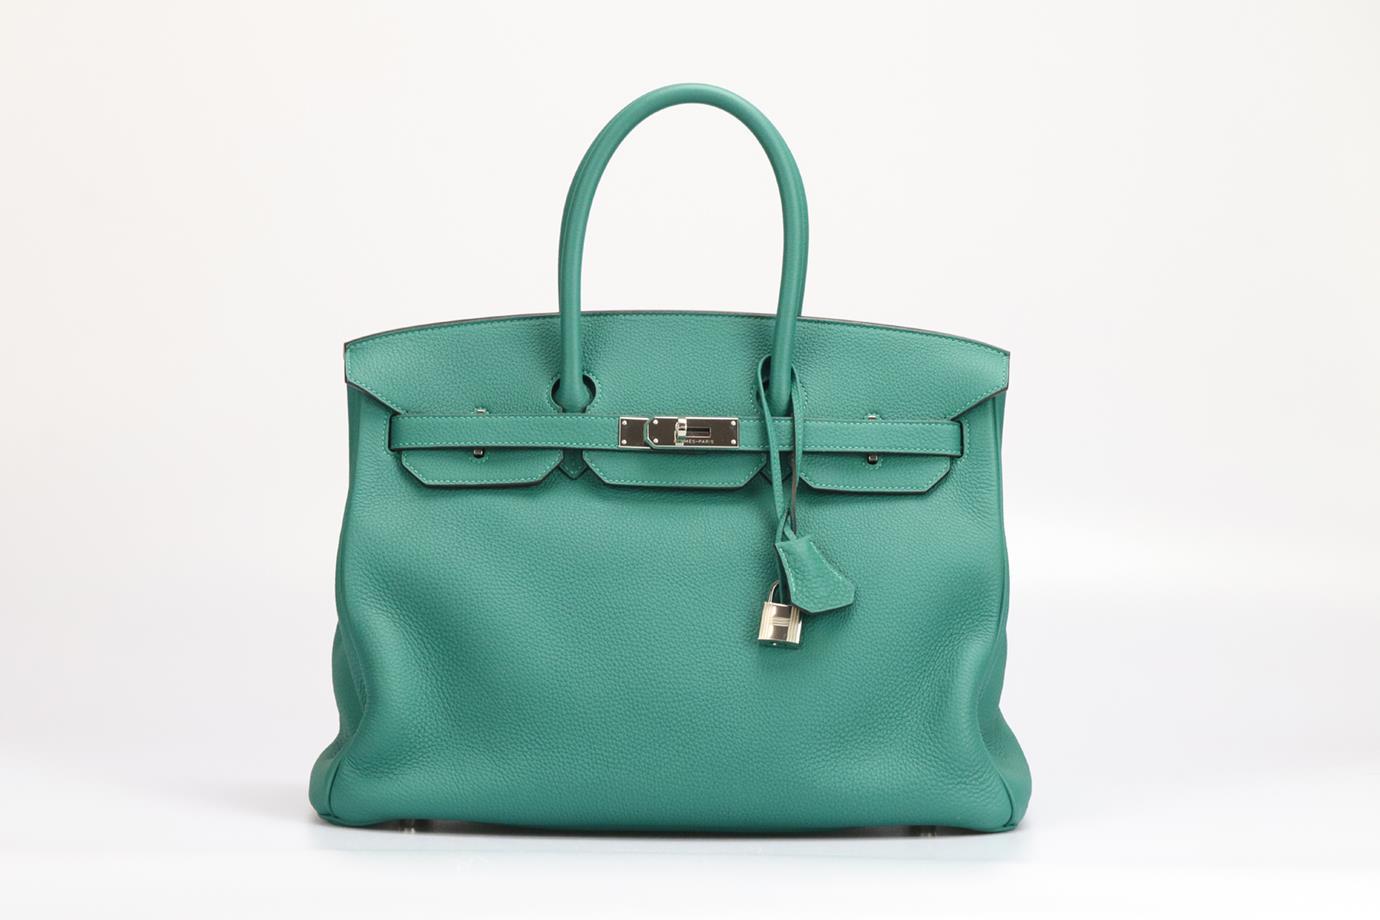 <ul>
<li>Hermès 2013 Birkin 35Cm Maurice Leather Bag.</li>
<li>Vert.</li>
<li>Fermeture par serrure tournante - Devant.</li>
<li>Il n'est pas accompagné d'un sac à poussière ou d'une boîte.</li>
<li>Modèle : Birkin 35.</li>
<li>Fabriqué en France,